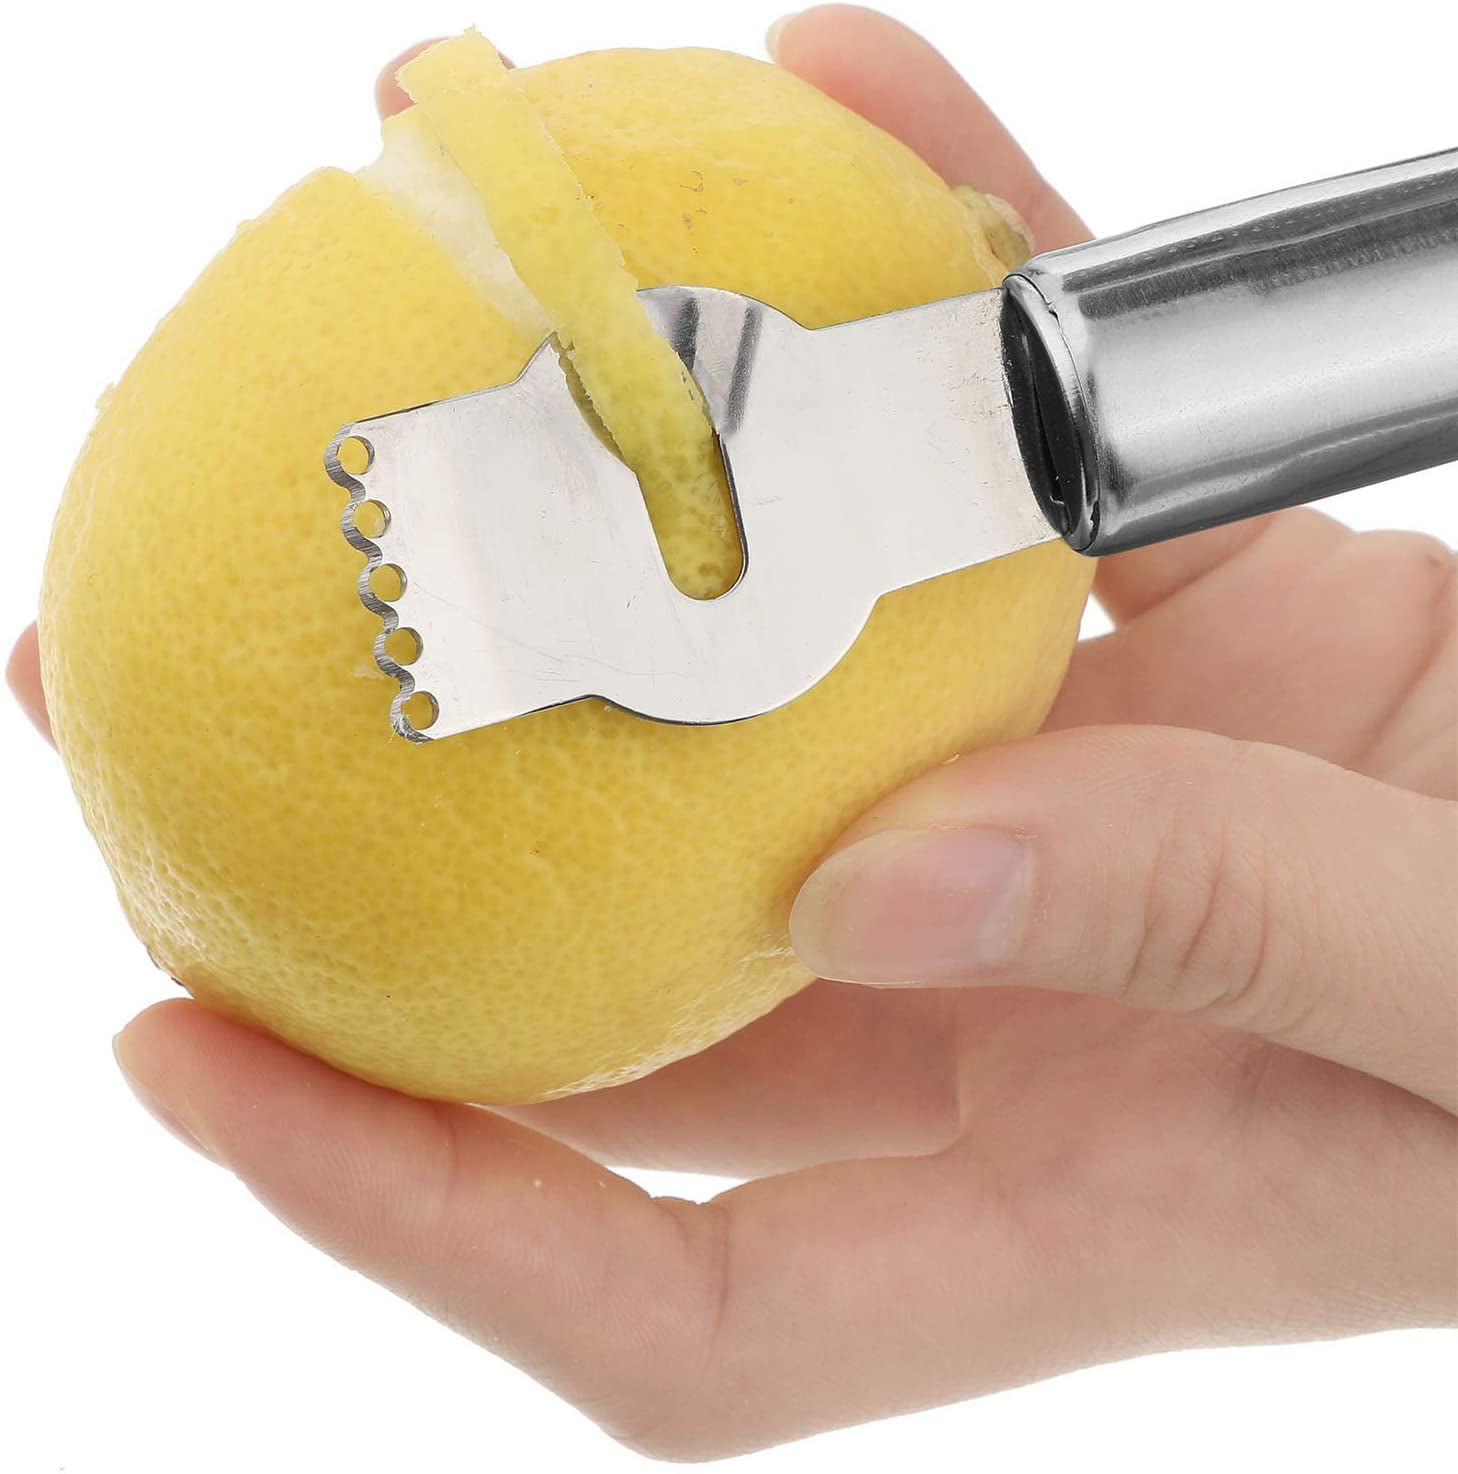 S-shine 4Pack Orange Citrus Peeler Lemon Citrus Peel Cutter Pomelo  Grapefruit Knife Zester Grater,Stainless Steel Fruit Cutter Opener Remover  Peeling